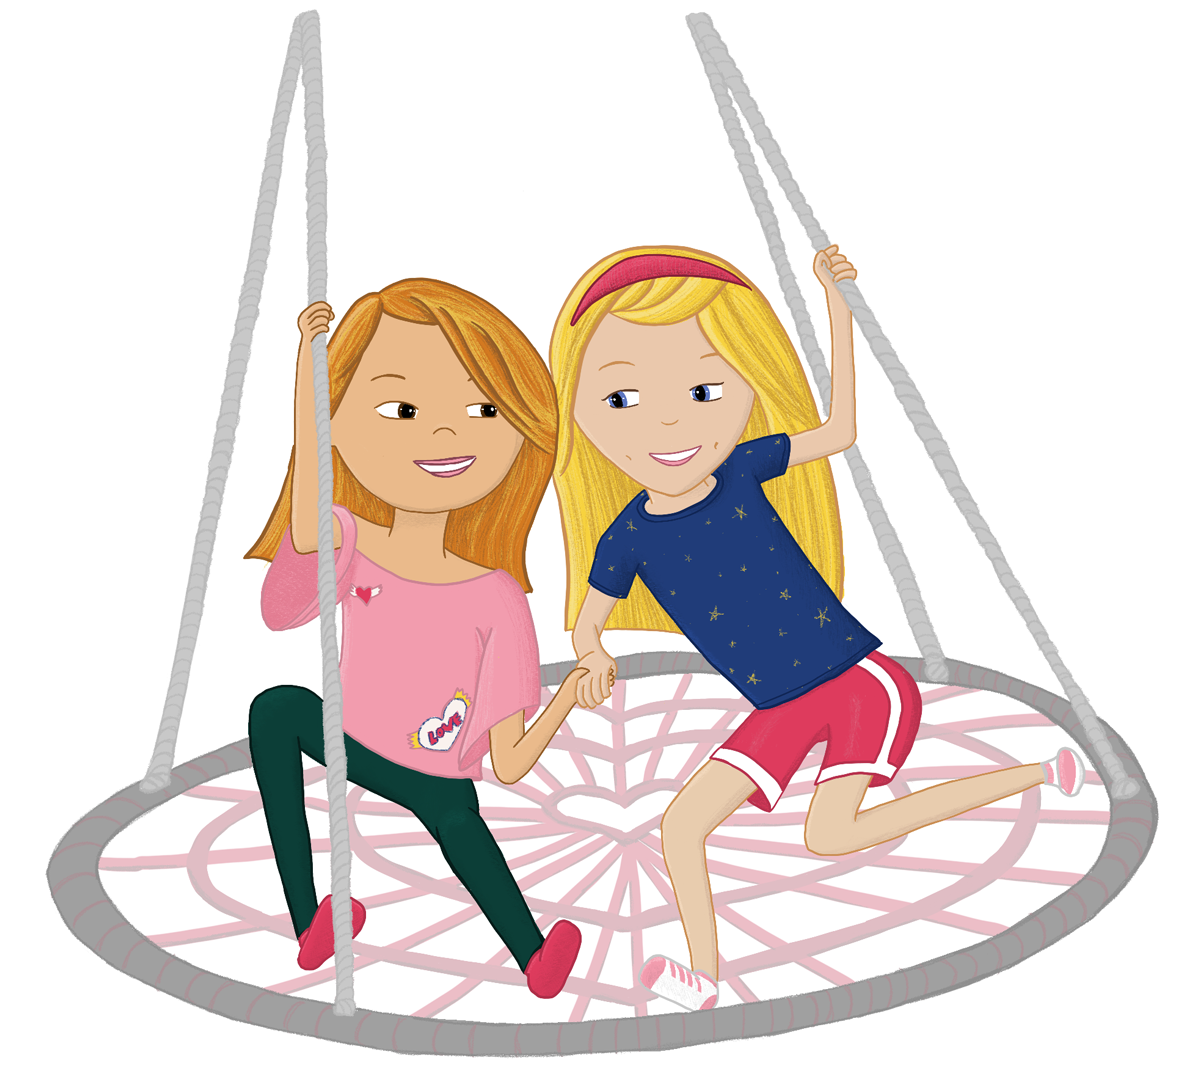 Best friends on a swing